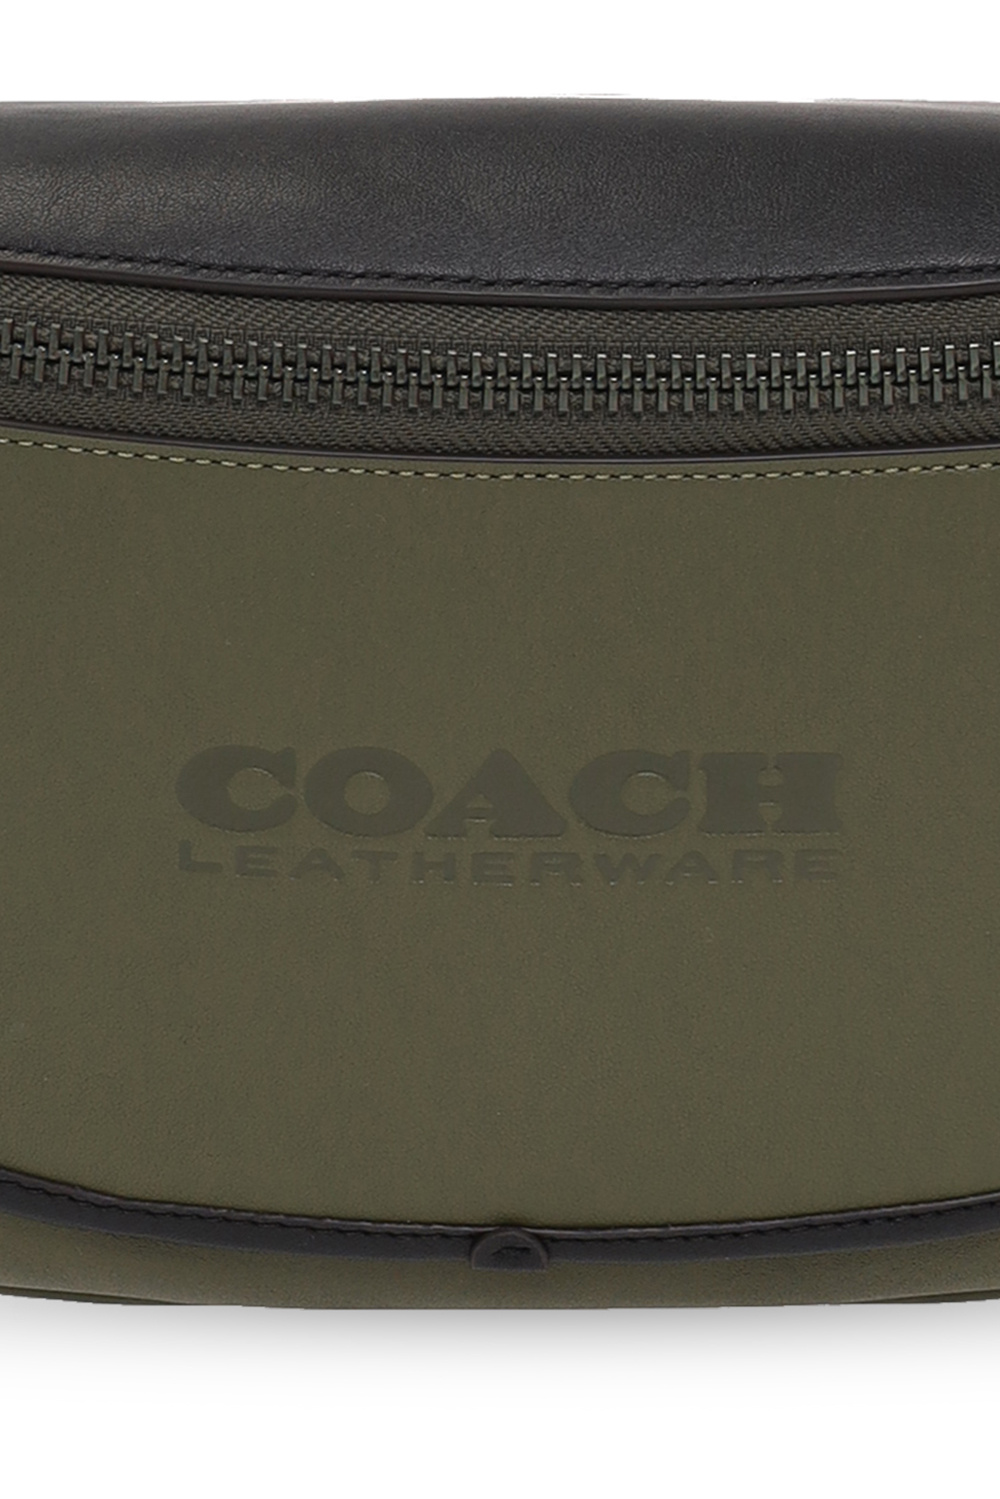 coach better ‘League’ belt bag